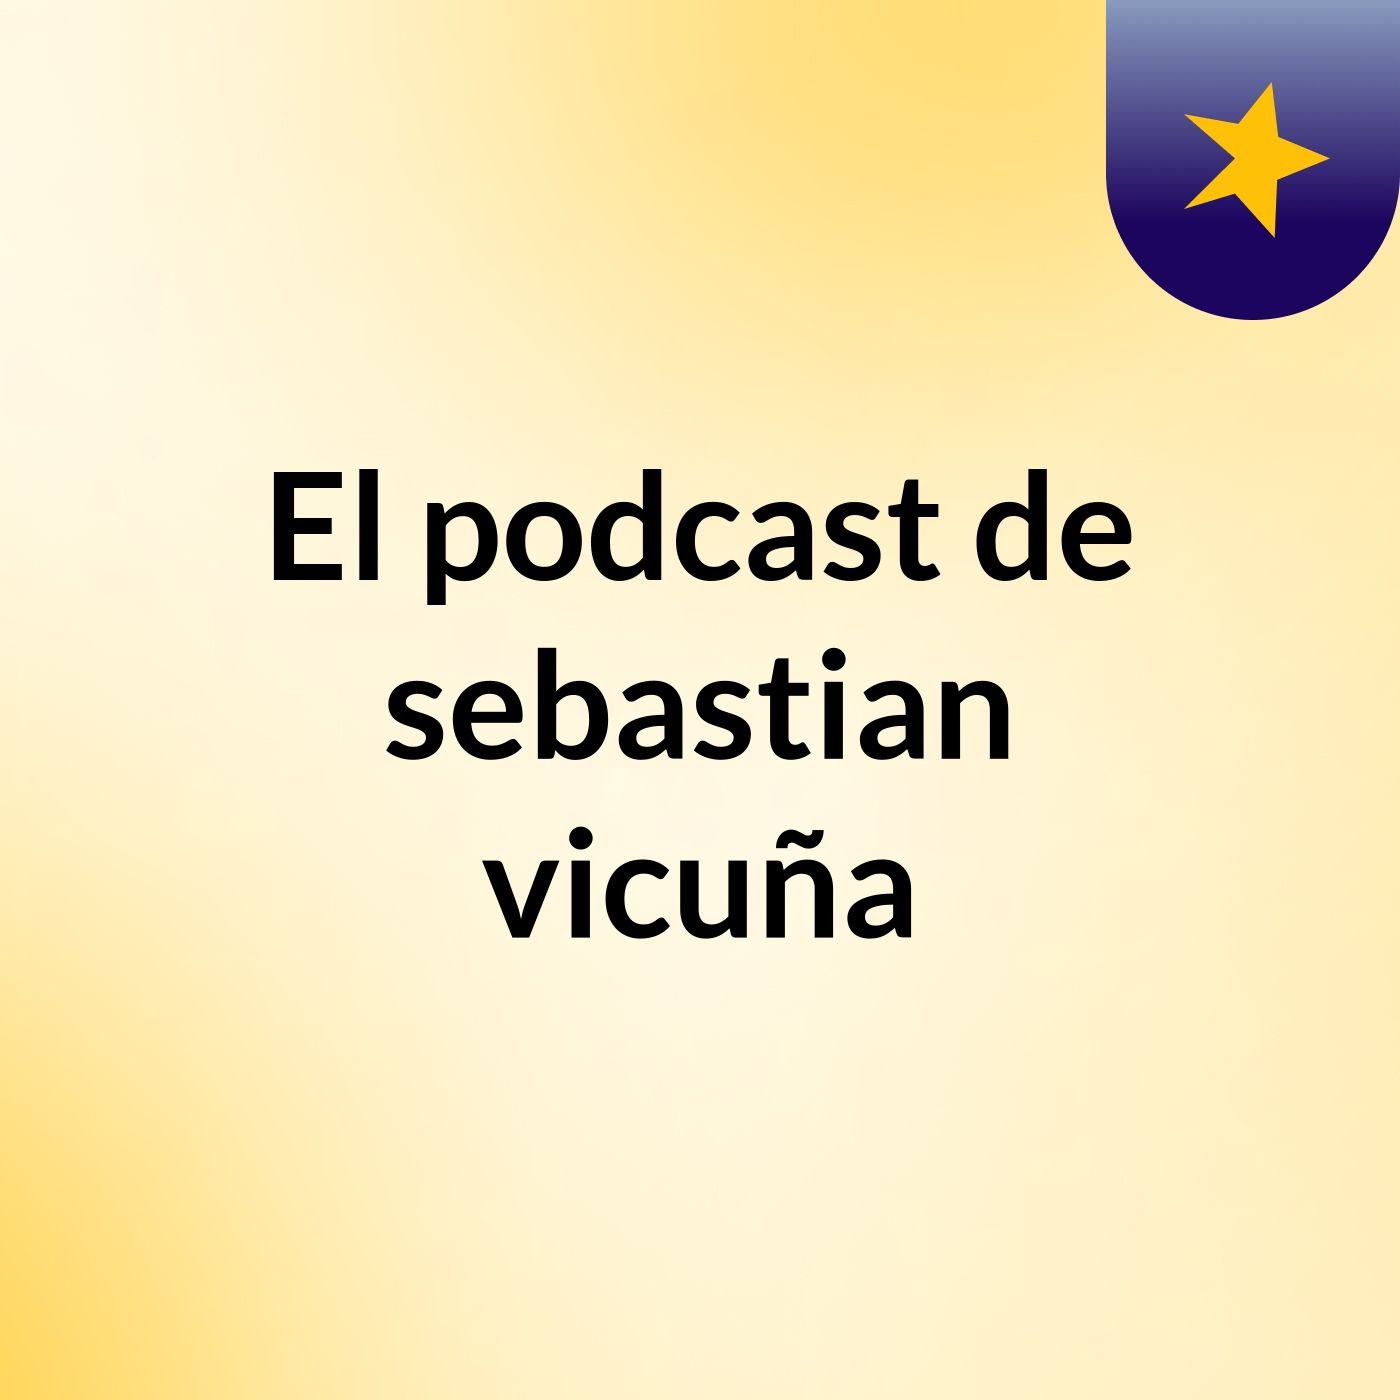 El podcast de sebastian vicuña